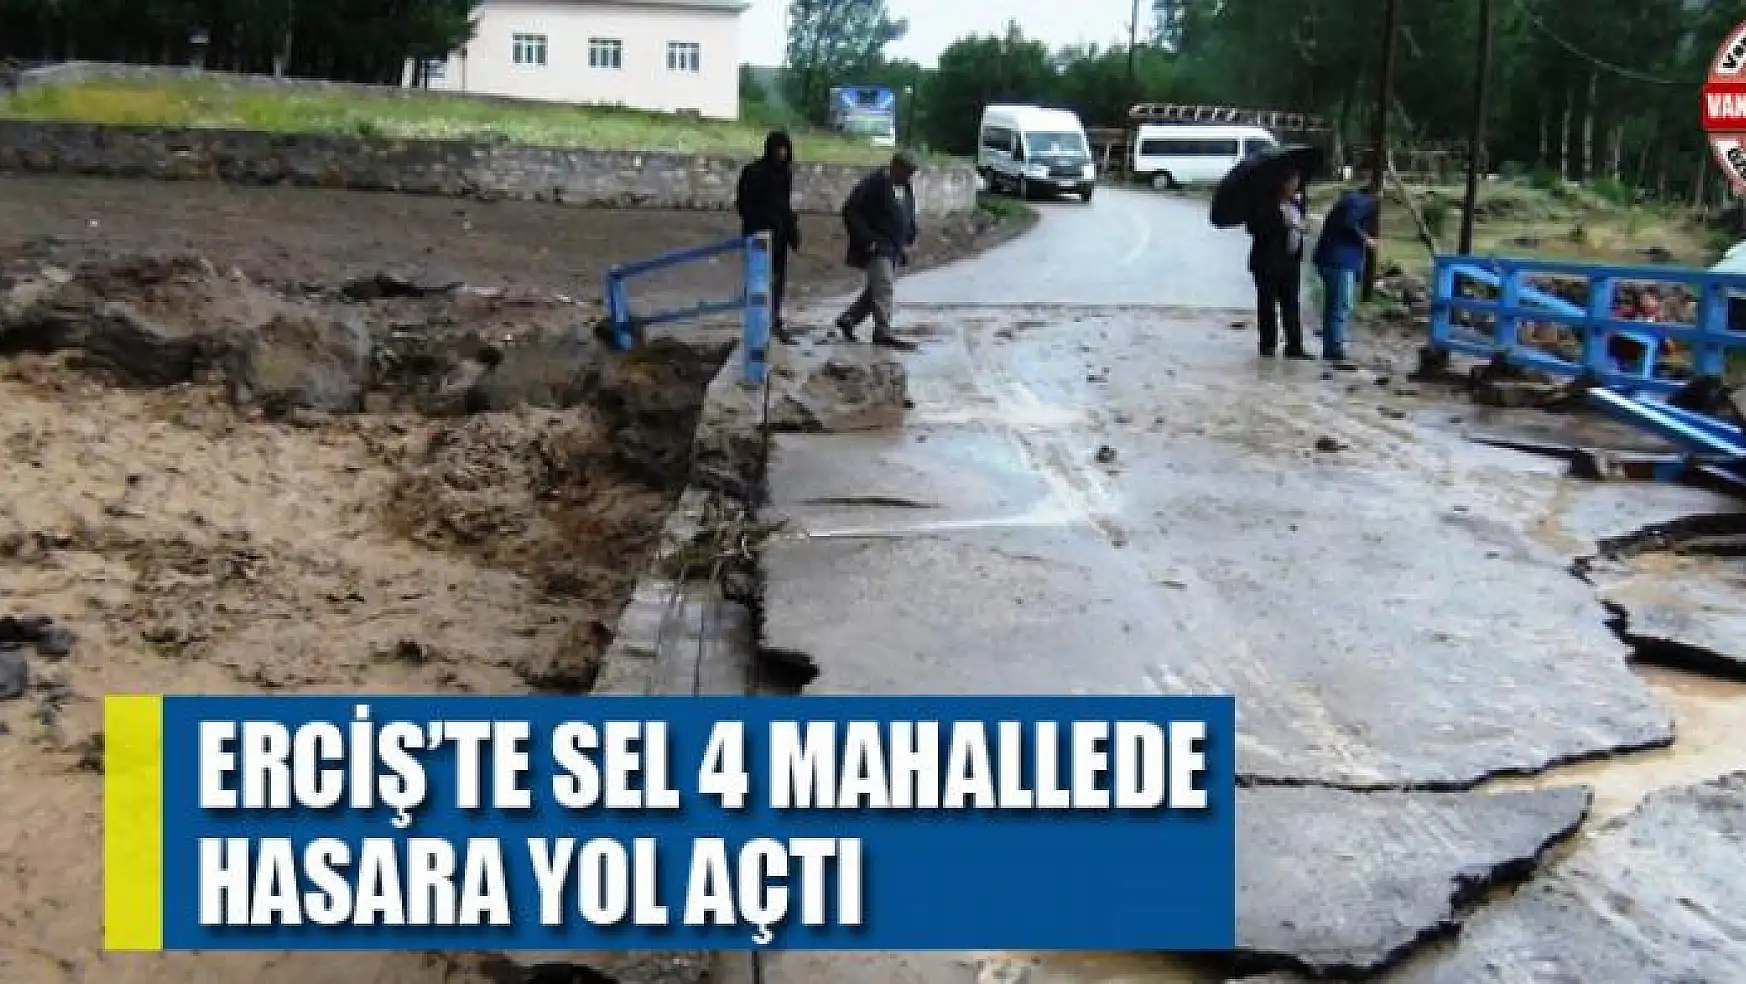 Erciş'te sel 4 mahallede hasara yol açtı